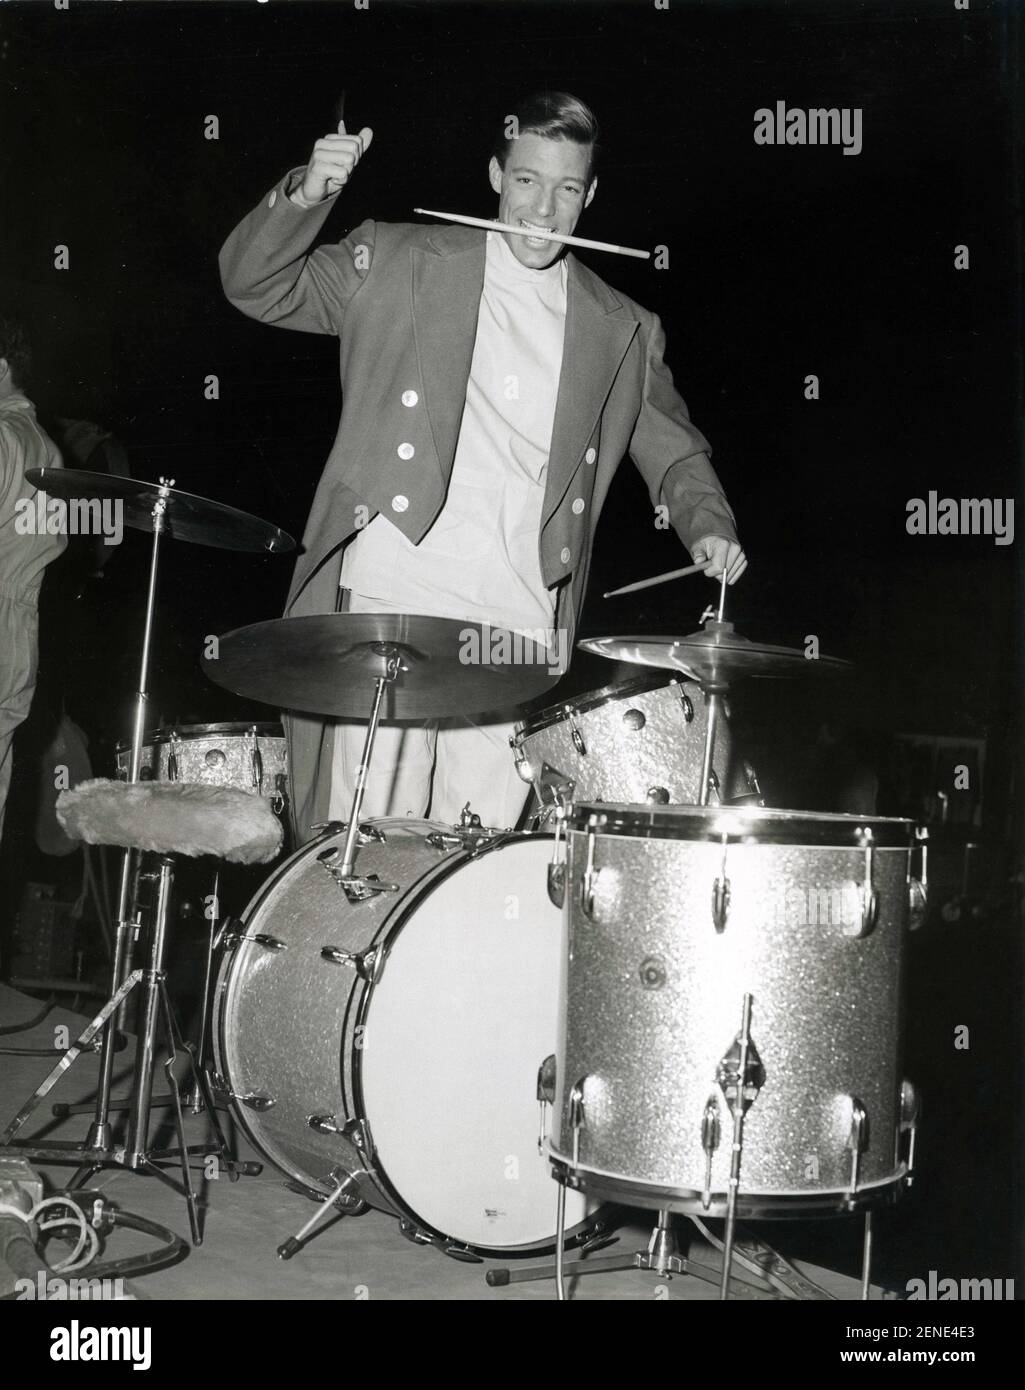 Durante la ripresa di un episodio della serie televisiva Dr. Kildare, Richard Chamberlain ha suonato la batteria Circa 1963 Foto Stock